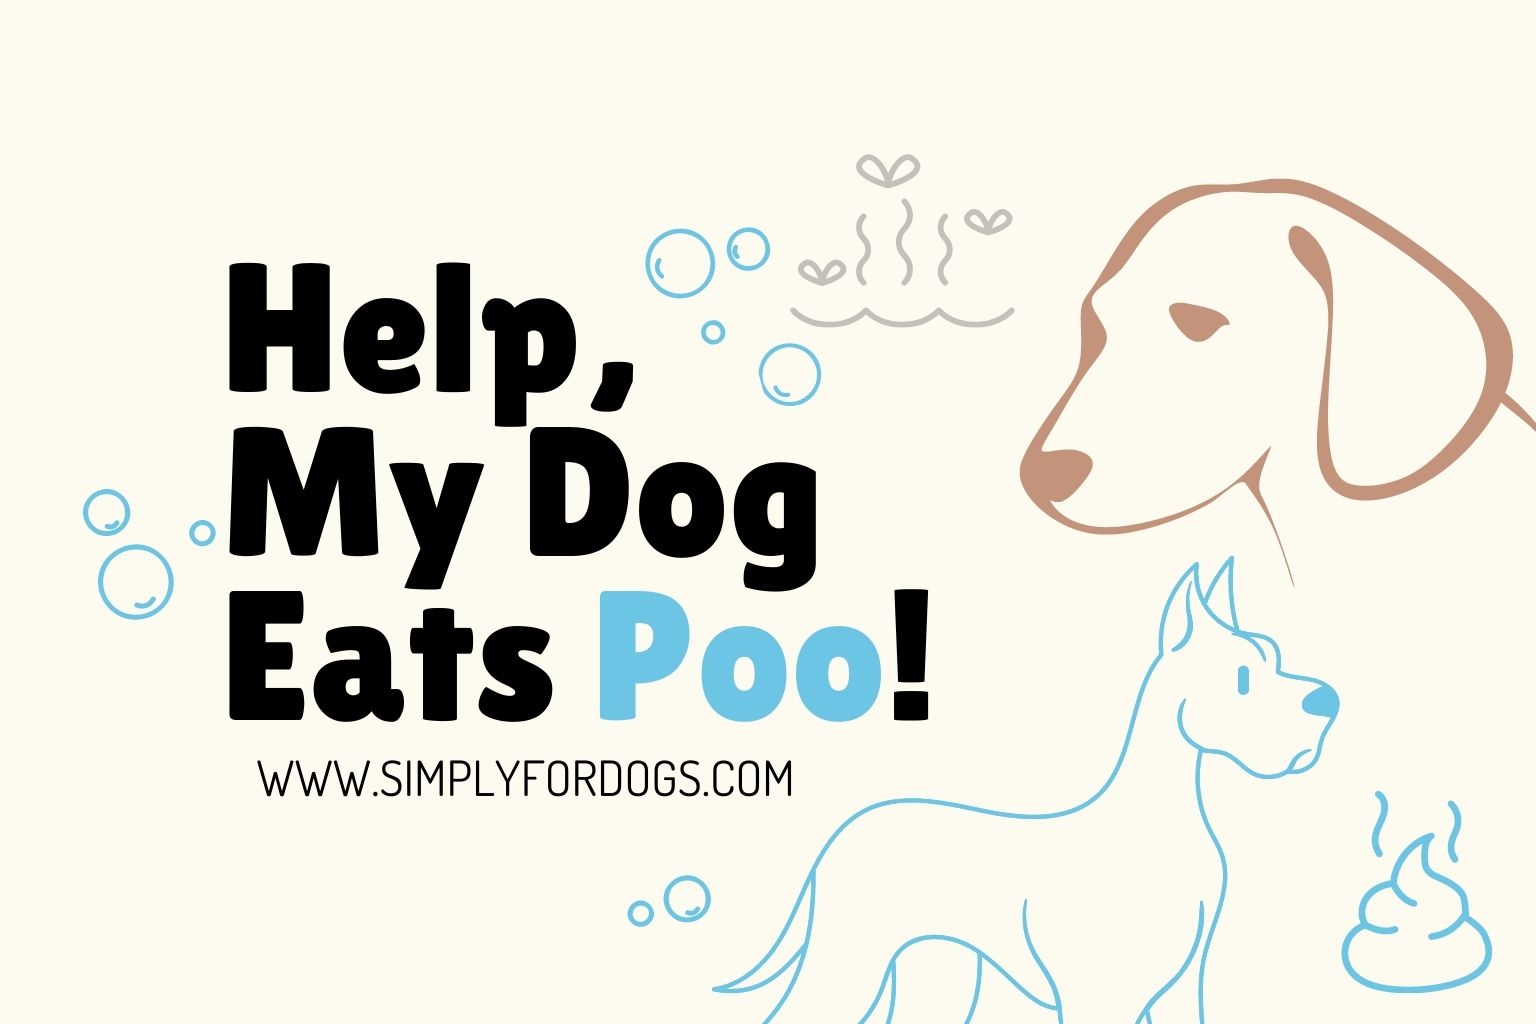 Help-My-Dog-Eats-Poo!